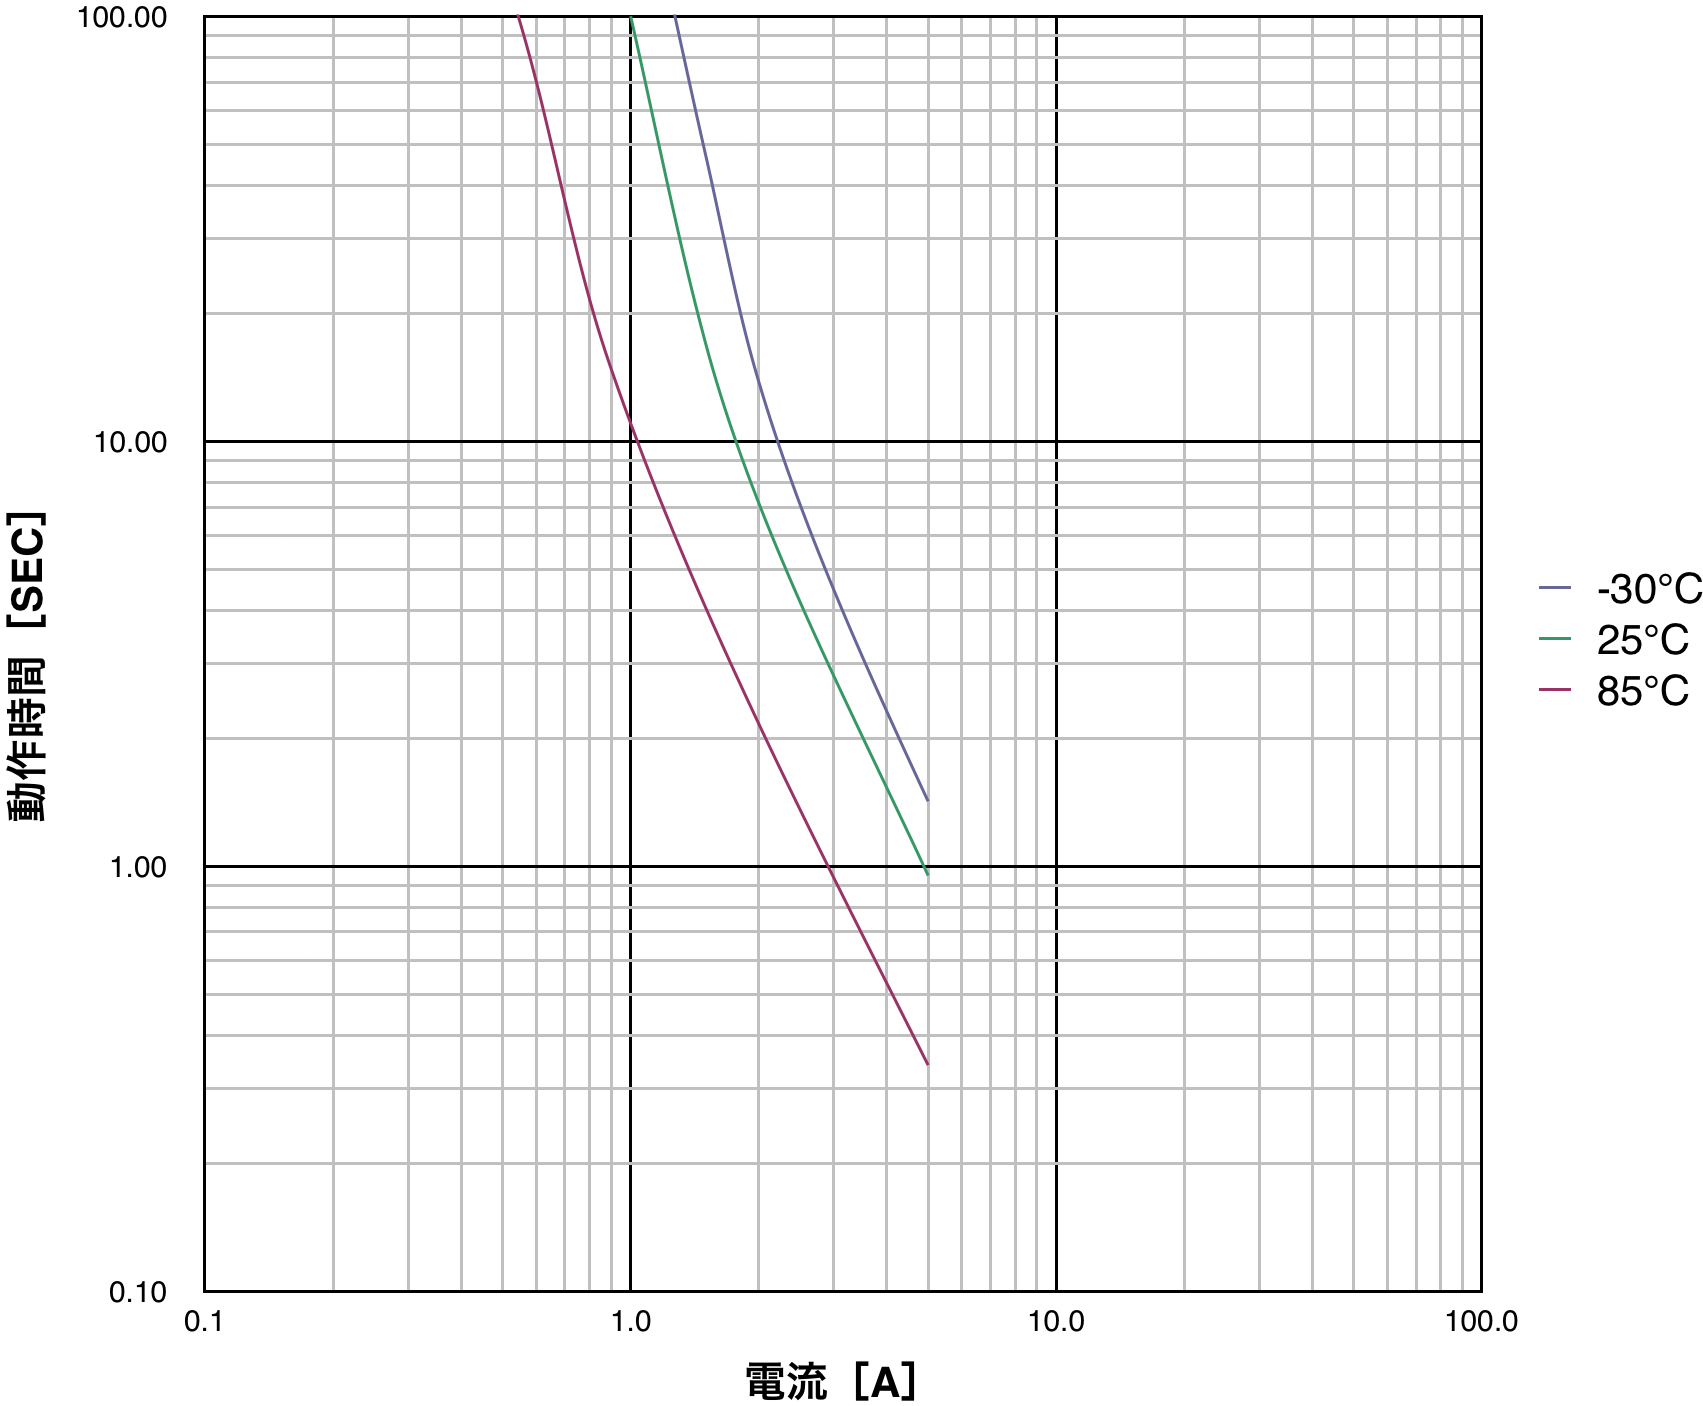 PTDD07N2-R47M160 動作時間特性(代表値)